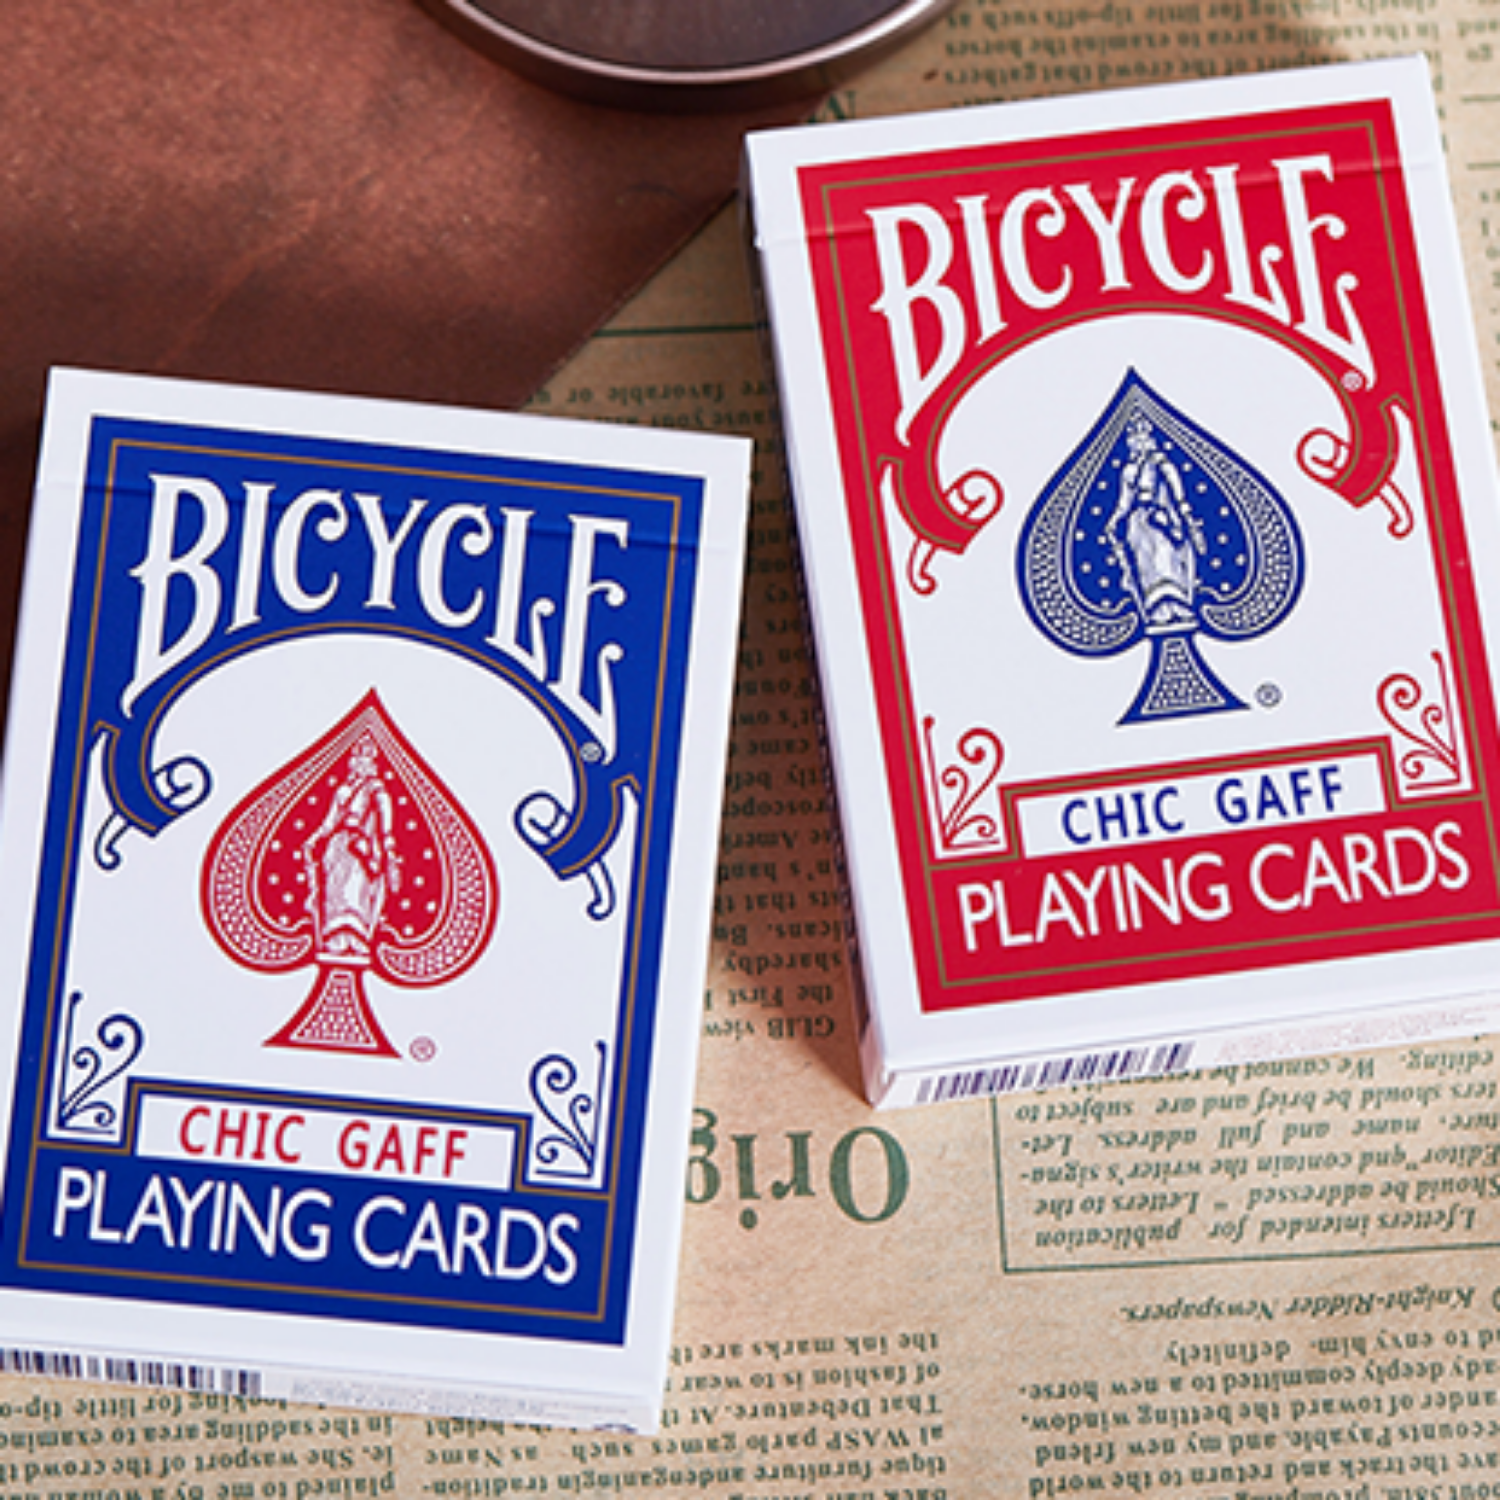 [바이시클 가프덱/레드] Bicycle Chic Gaff (Red) Playing Cards 30종이상의 트릭이 담겨있으며 온라인해법이 제공됩니다.